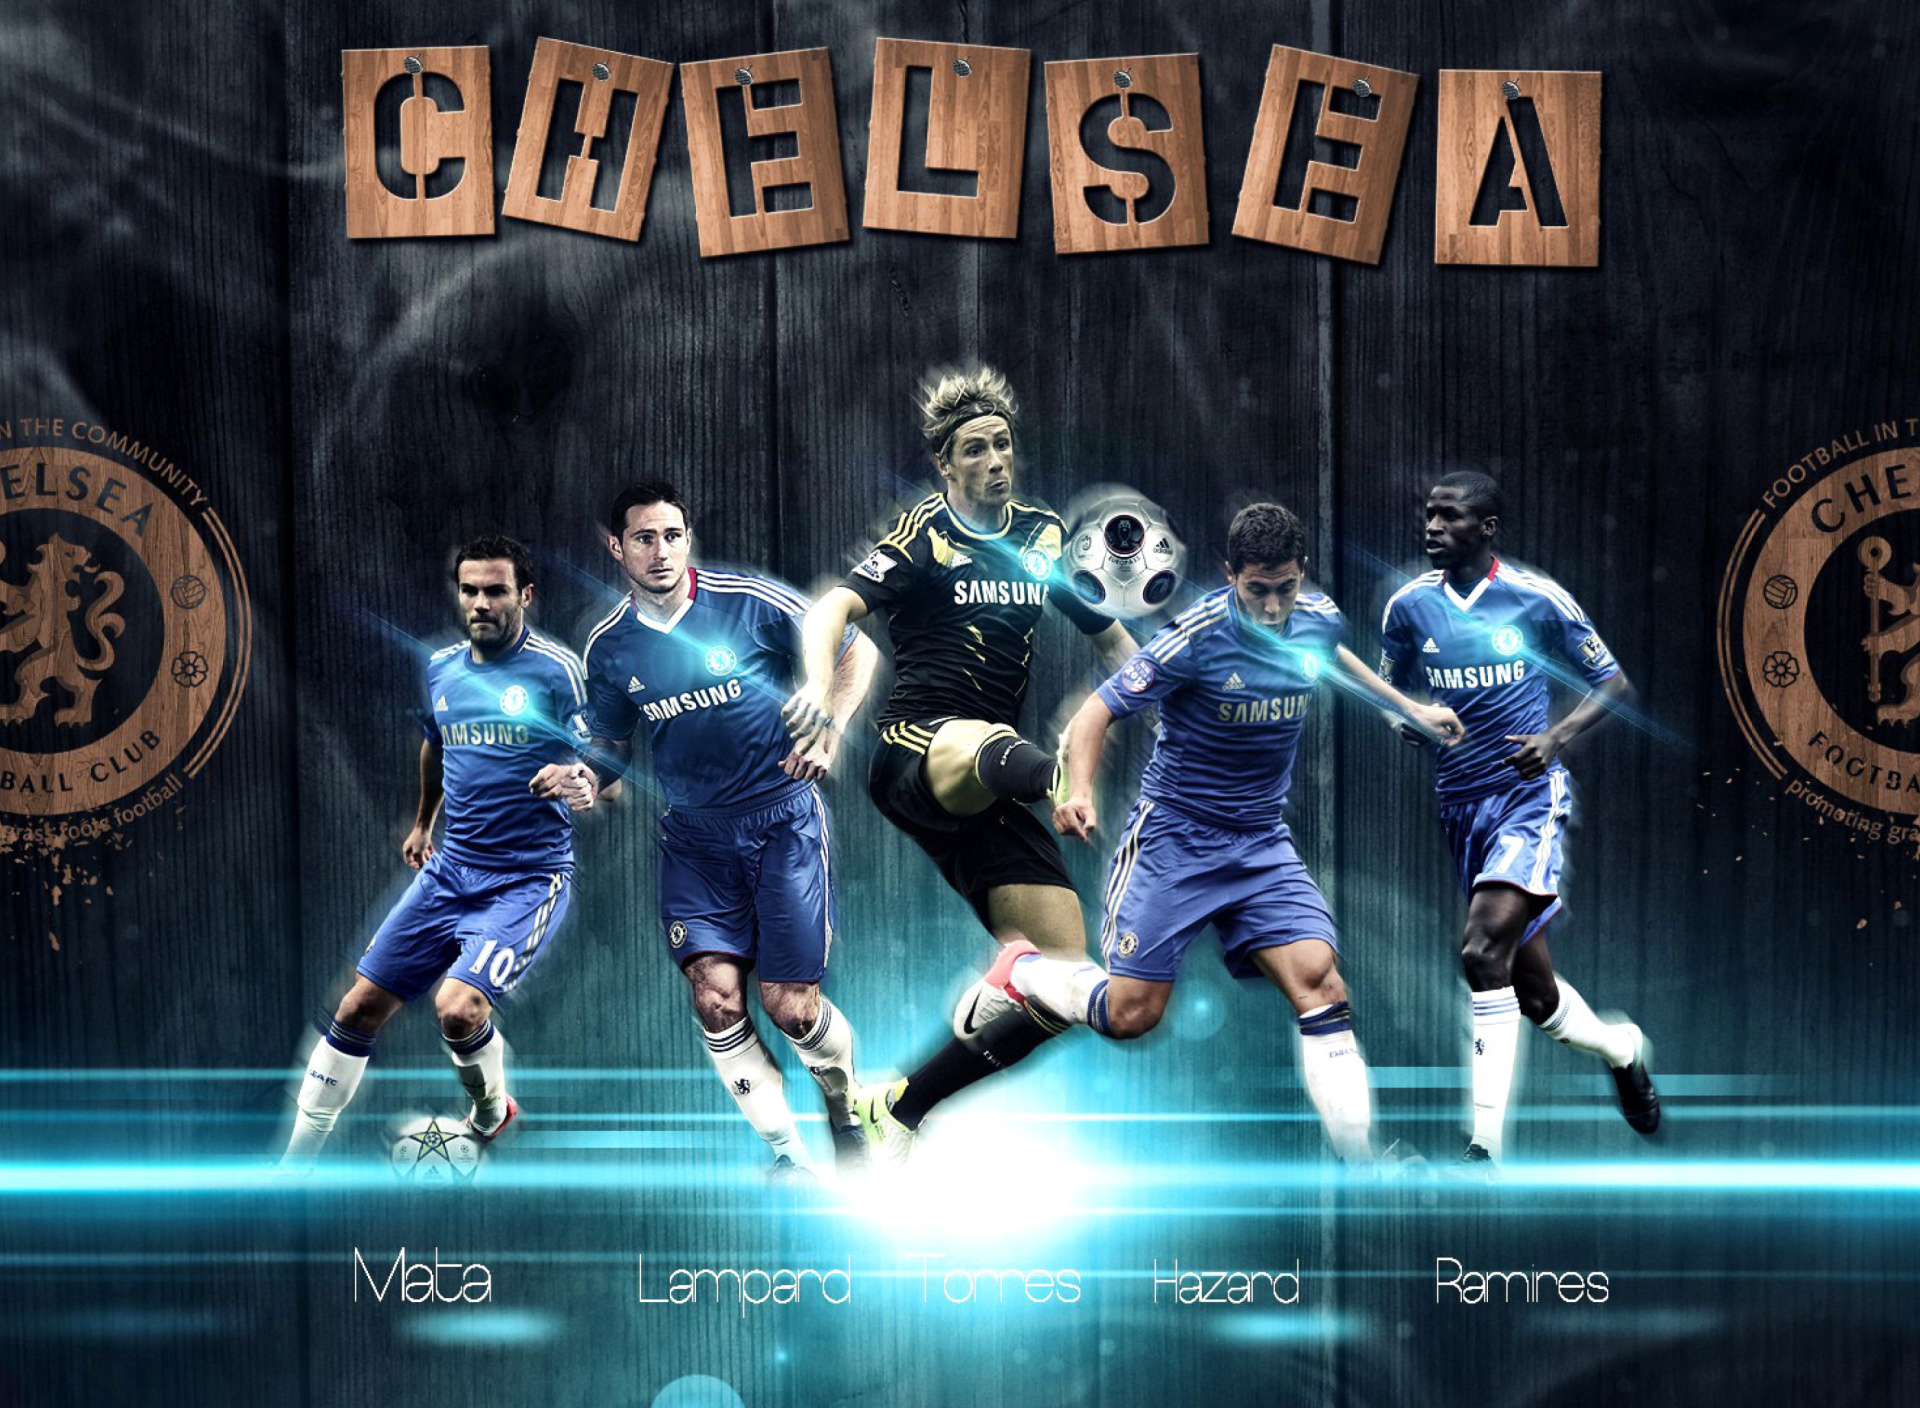 Das Chelsea, FIFA 15 Team Wallpaper 1920x1408